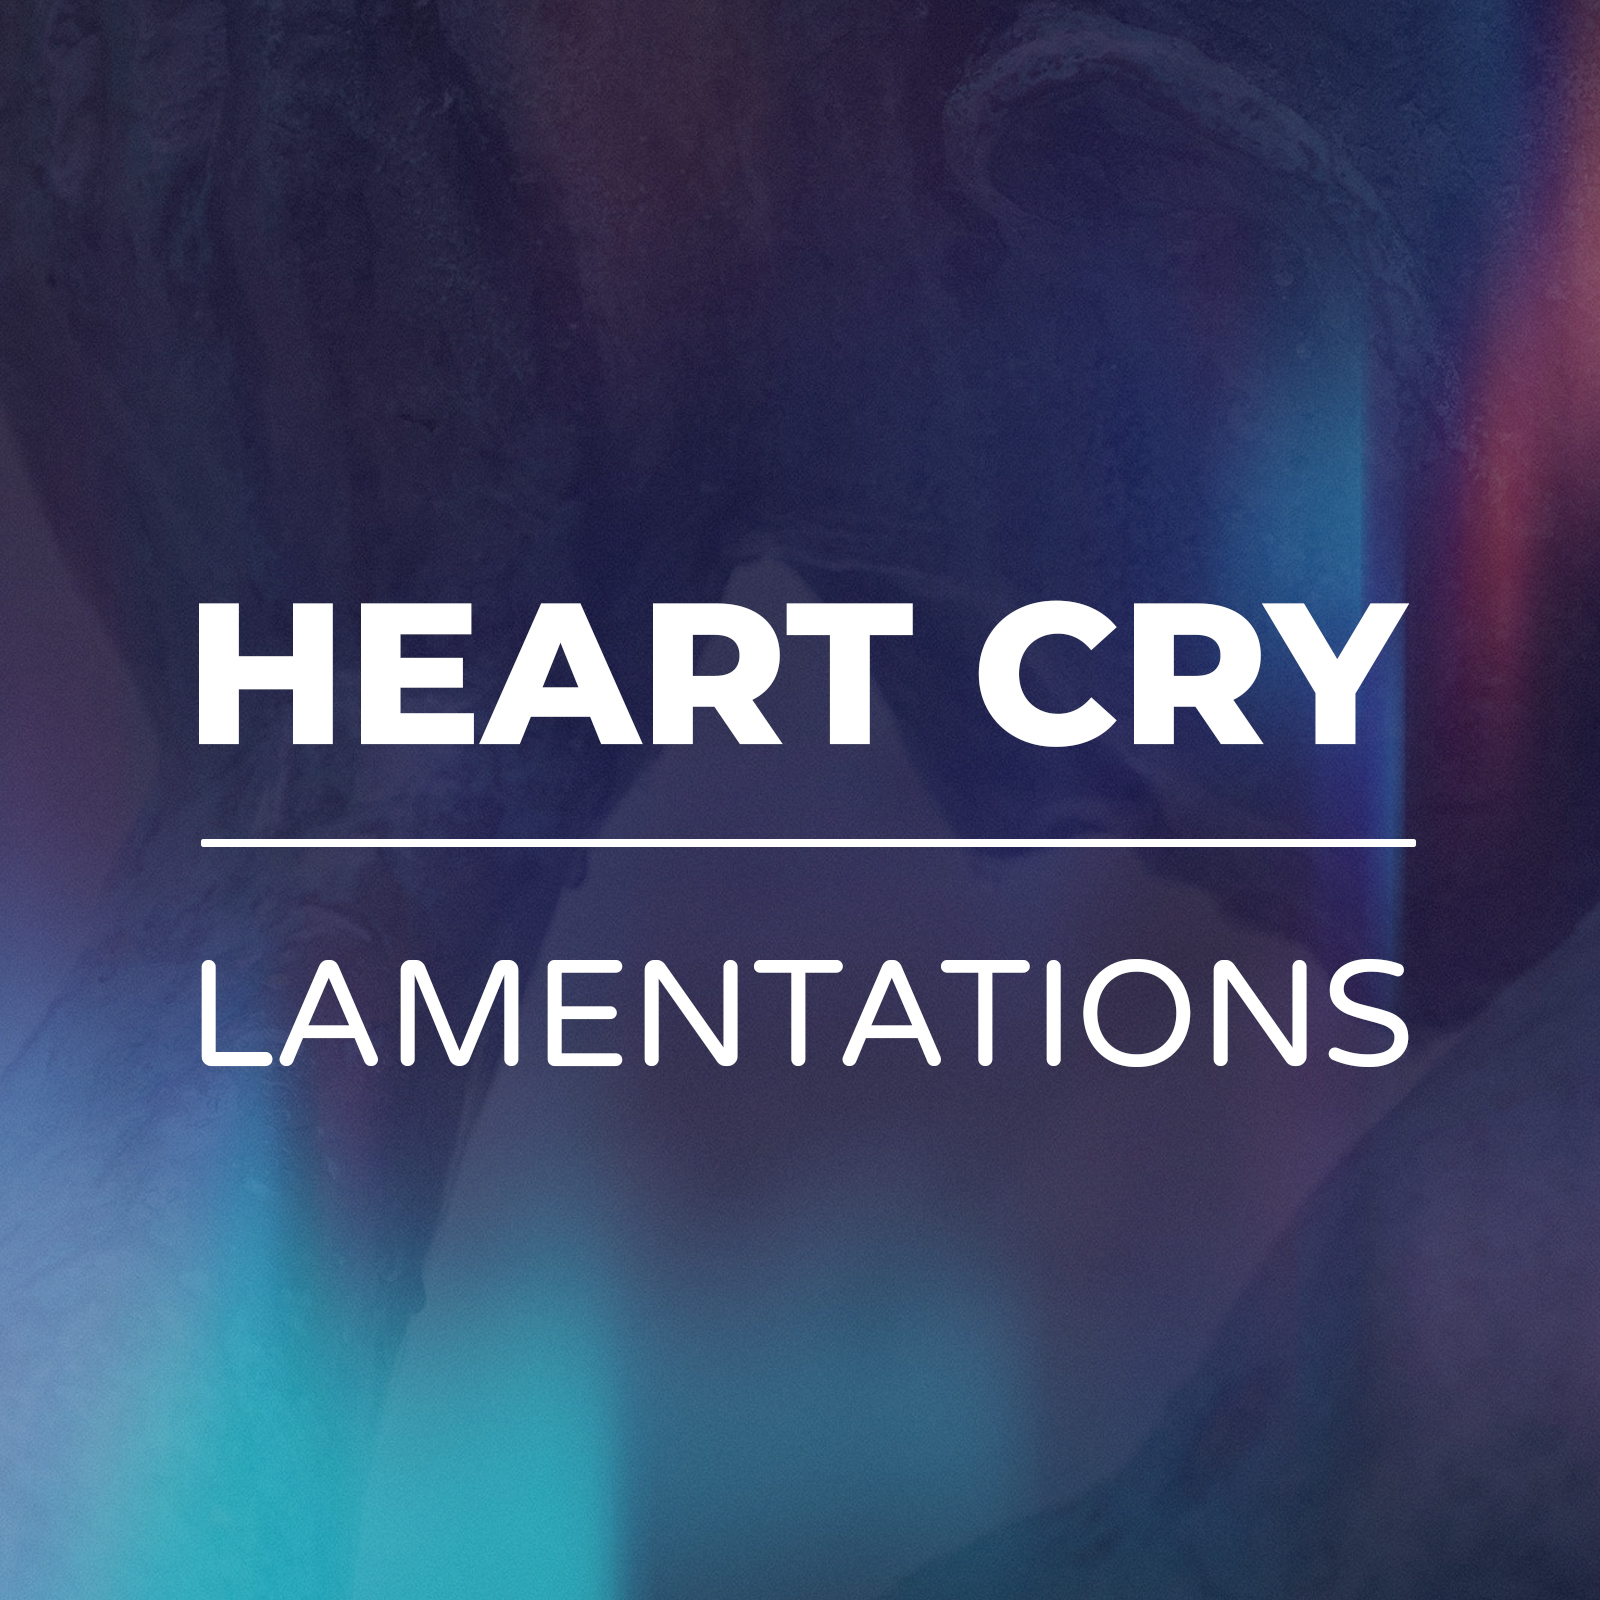 Hear Cry Lamentations sermon series - hope church huddersfield